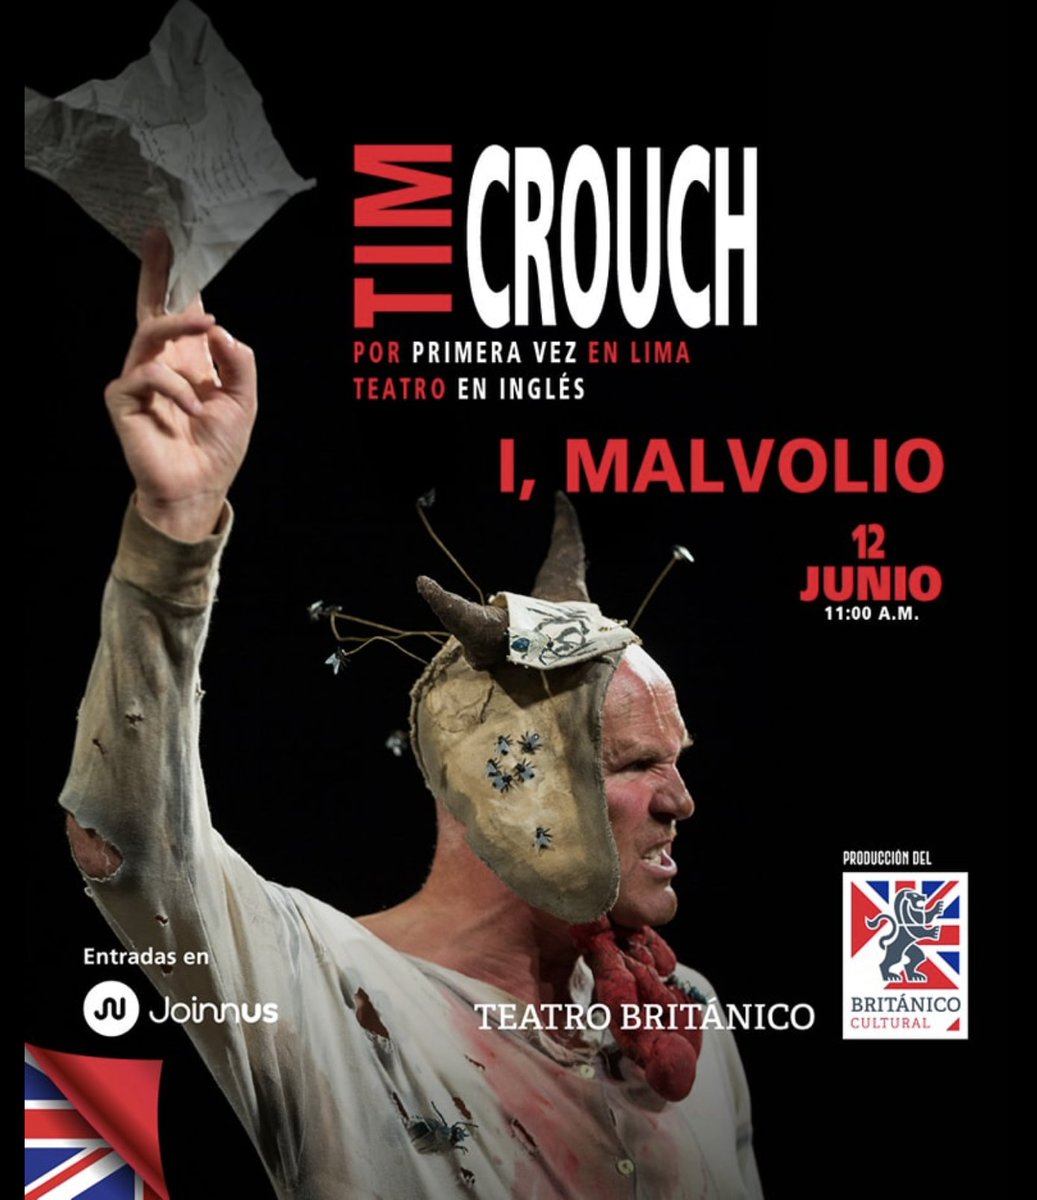 Tim Crouch por 1era vez en Lima. Presentará 2 funciones I,Malvolio y Truth's a Dog Must to Kennel entre el 11 y 12 de junio en el Teatro Británico.

Compra tus entradas aquí:

Truth's a Dog Must to Kennel 👉 bit.ly/4bKA5oU

I, Malvolio 👉 bit.ly/4e3fgqc